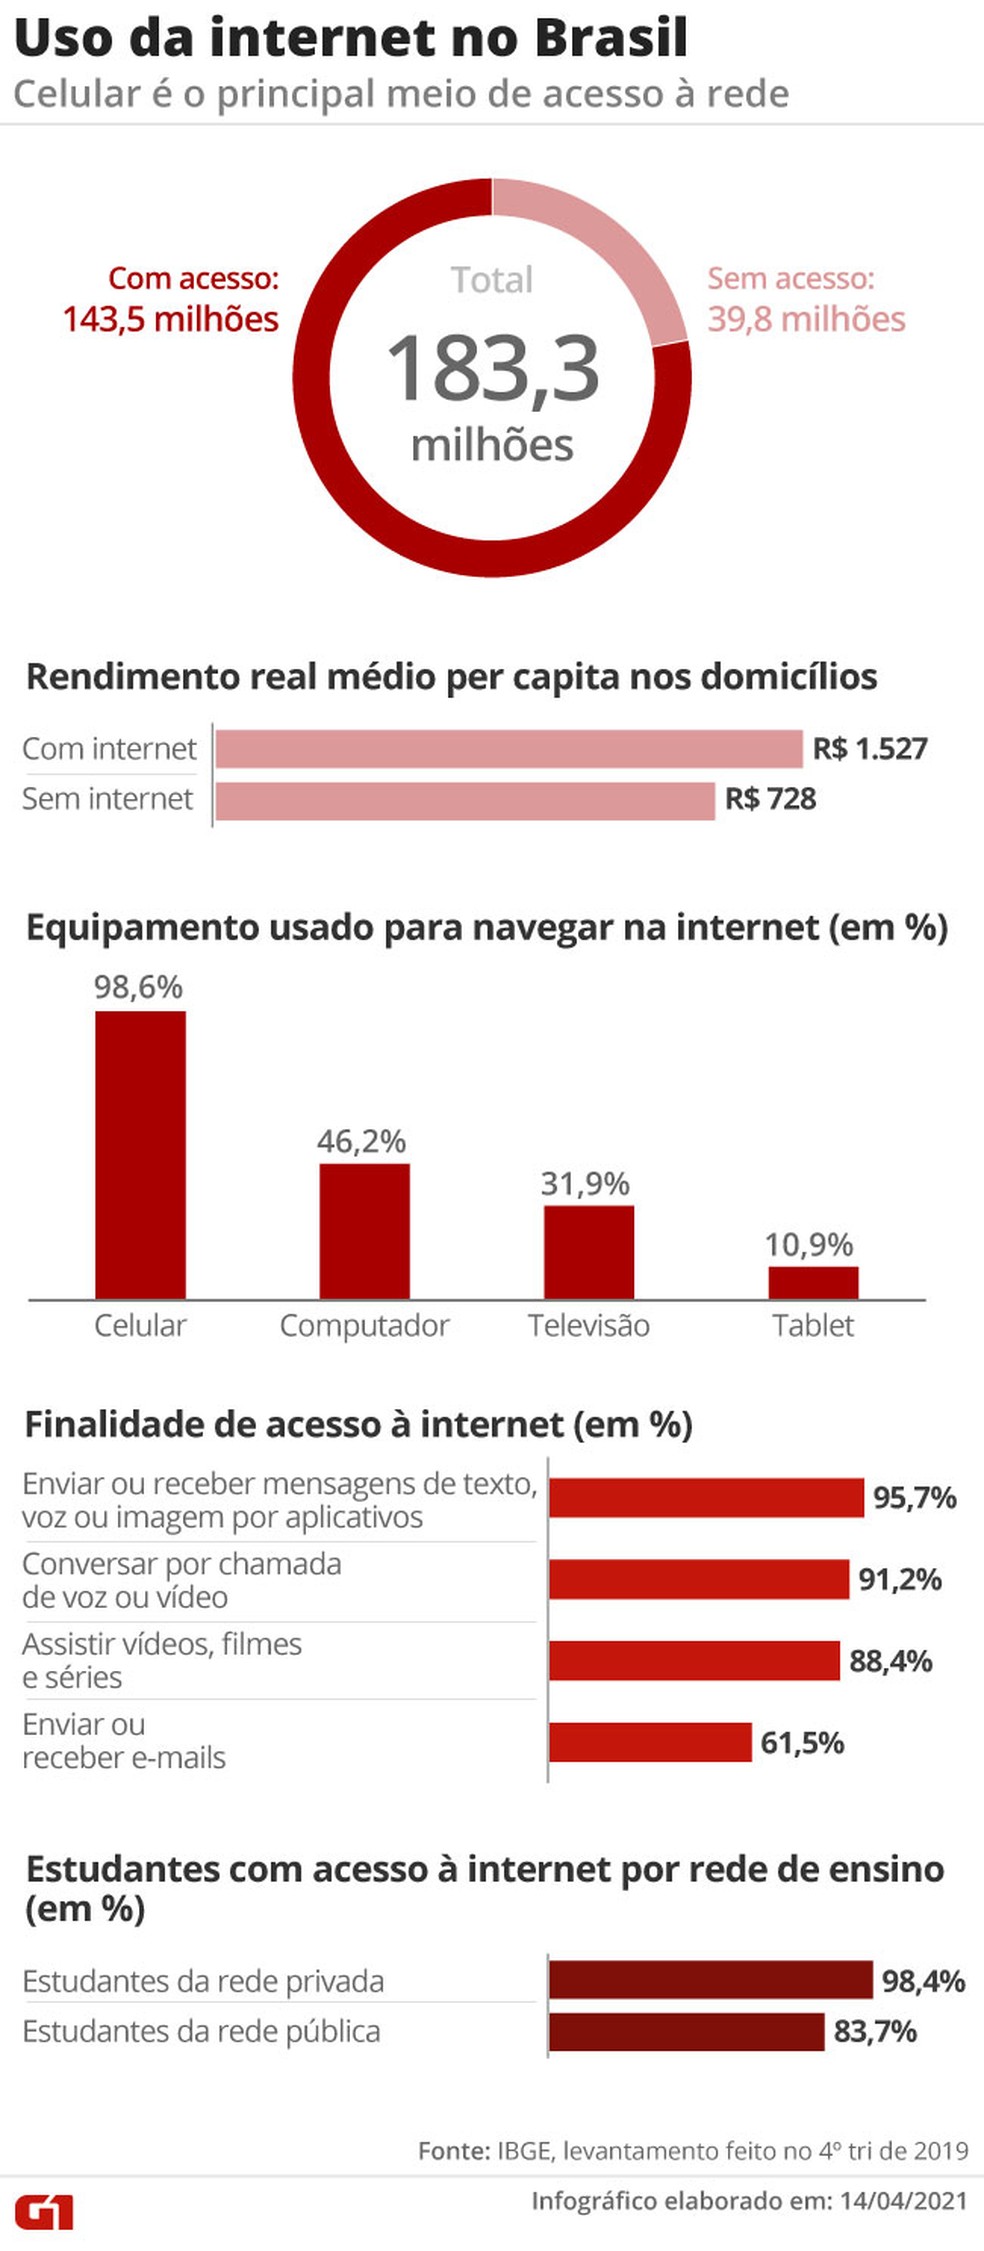 G1 - No Brasil, 96% dos internautas acessam vídeos pela web